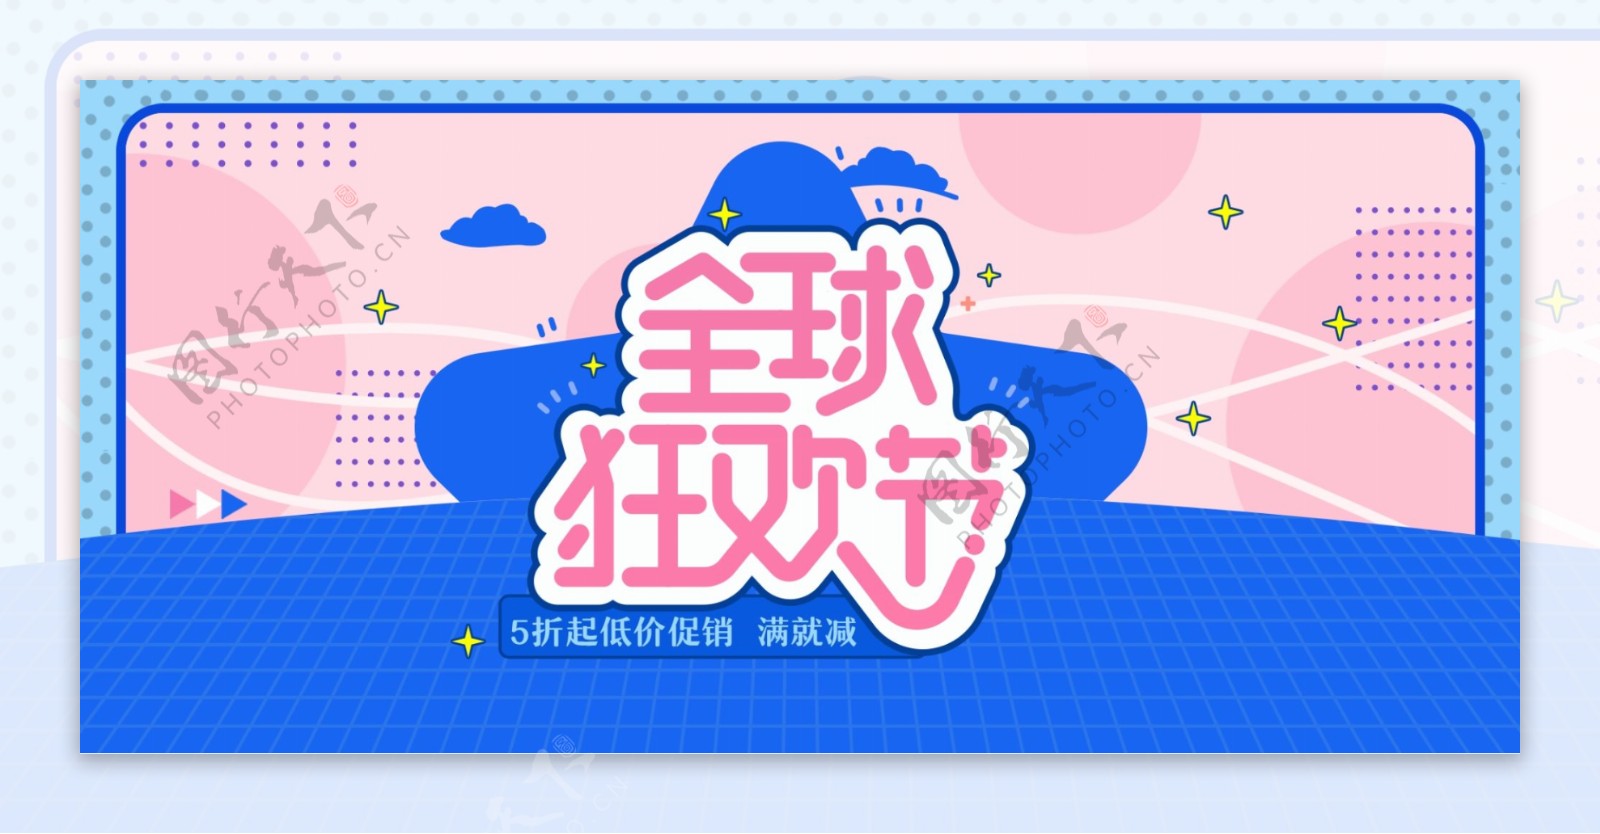 简约清新电商淘宝88全球狂欢节促销海报